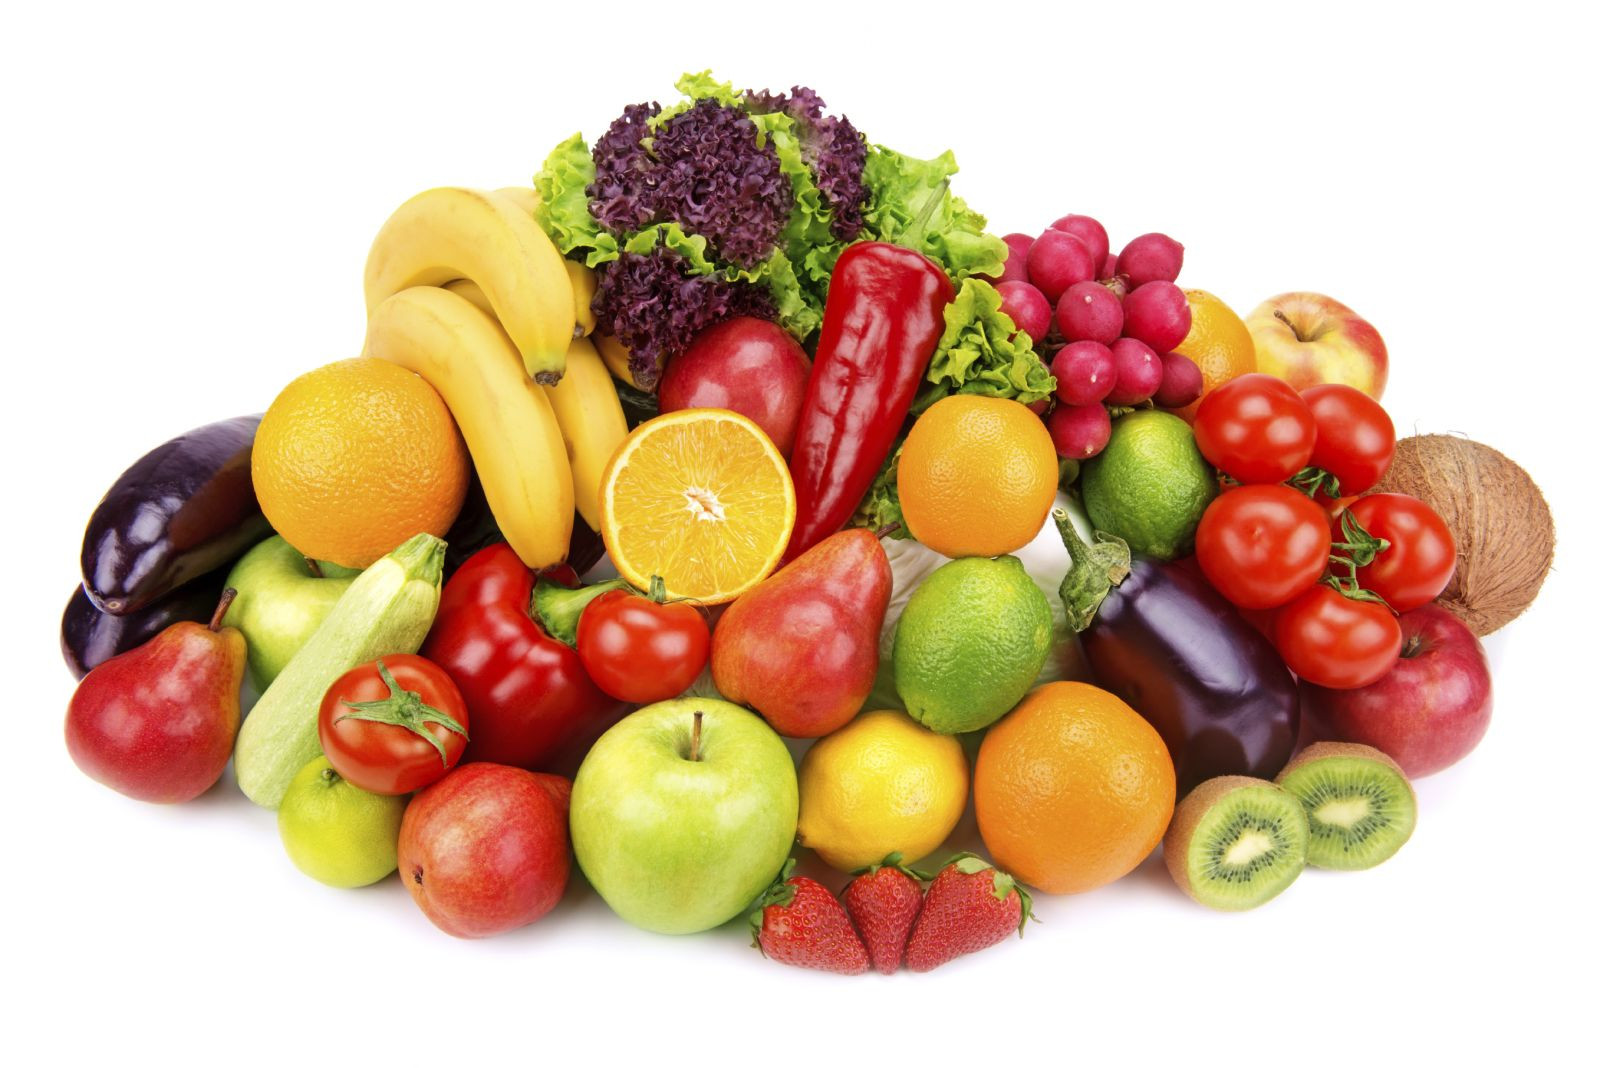 میوه ها و سبزیجات با رنگ روشن